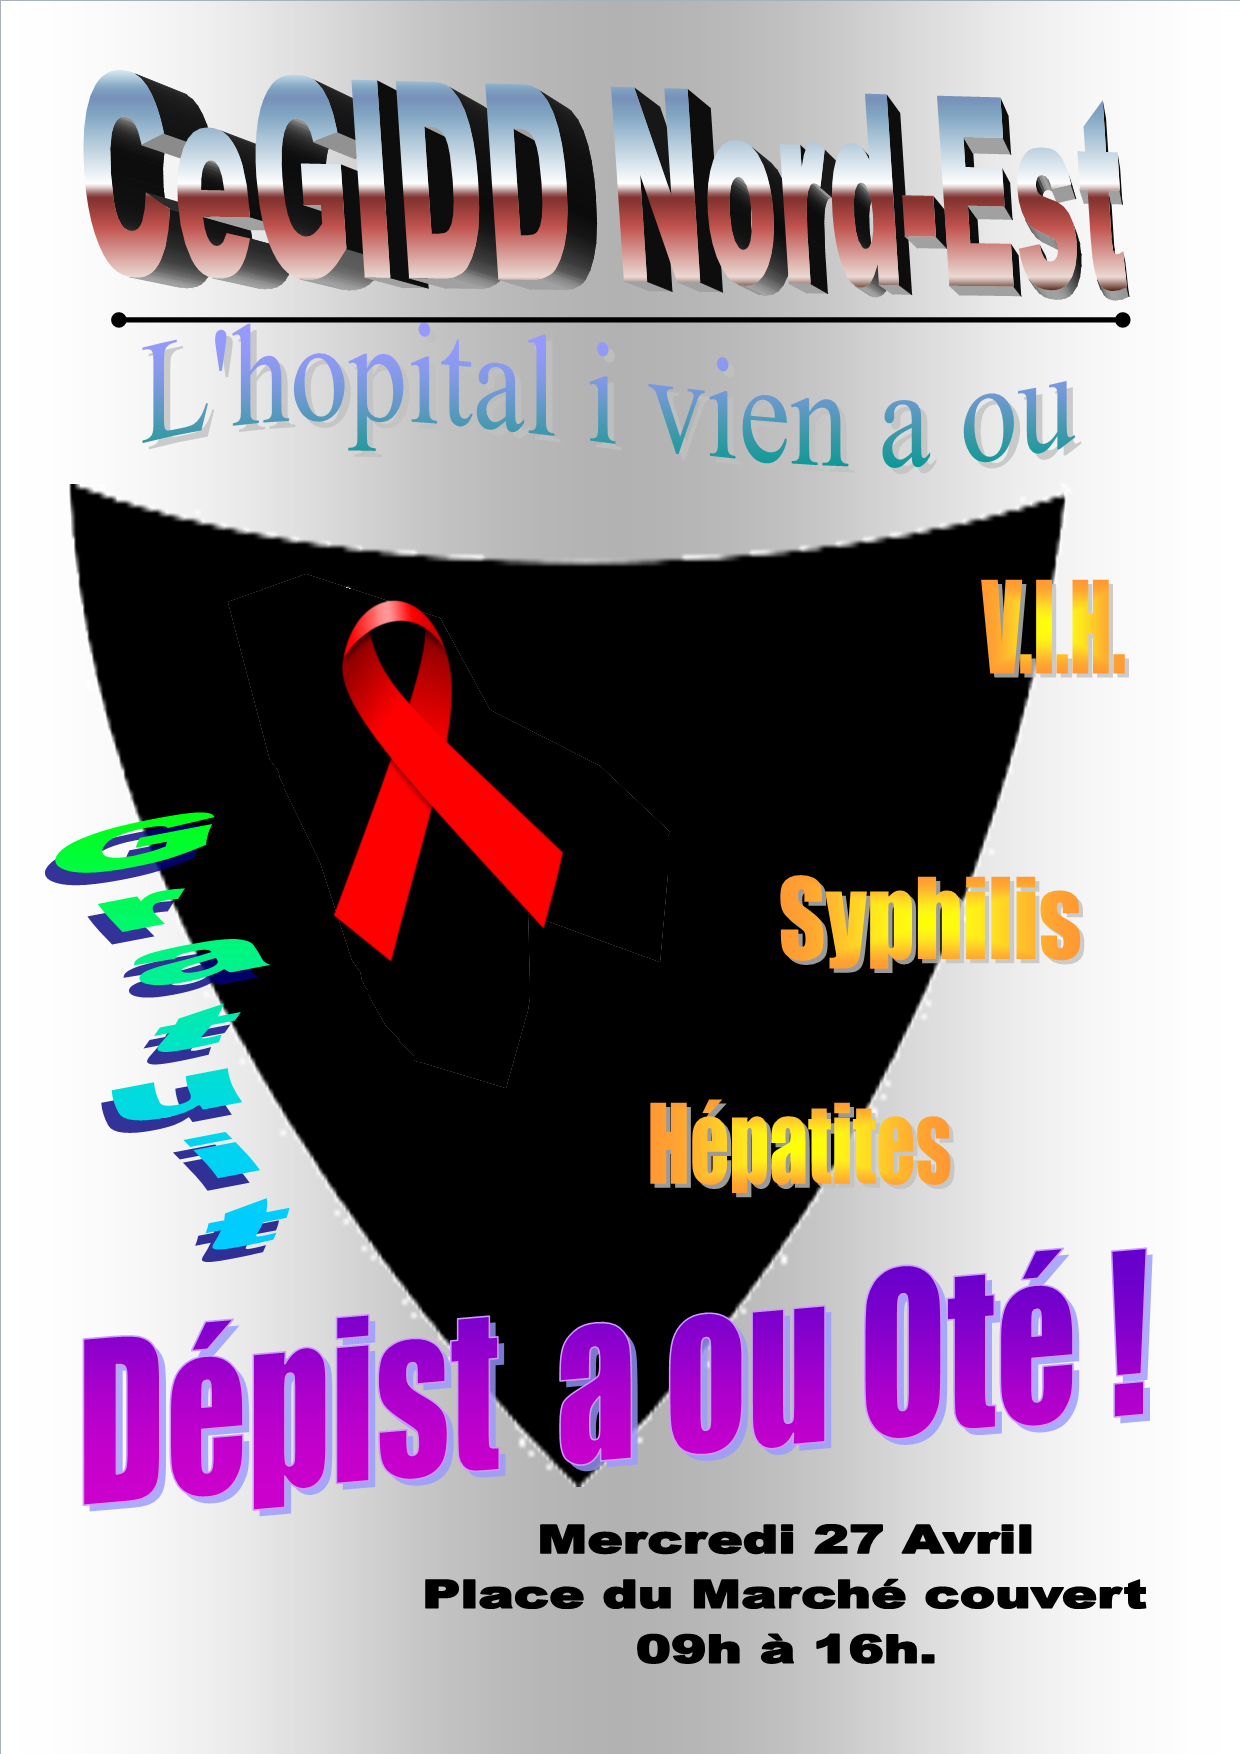 Testing Day à St-Benoît: Dépistages gratuits du VIH, hépatites B et C, et syphilis le 27 avril